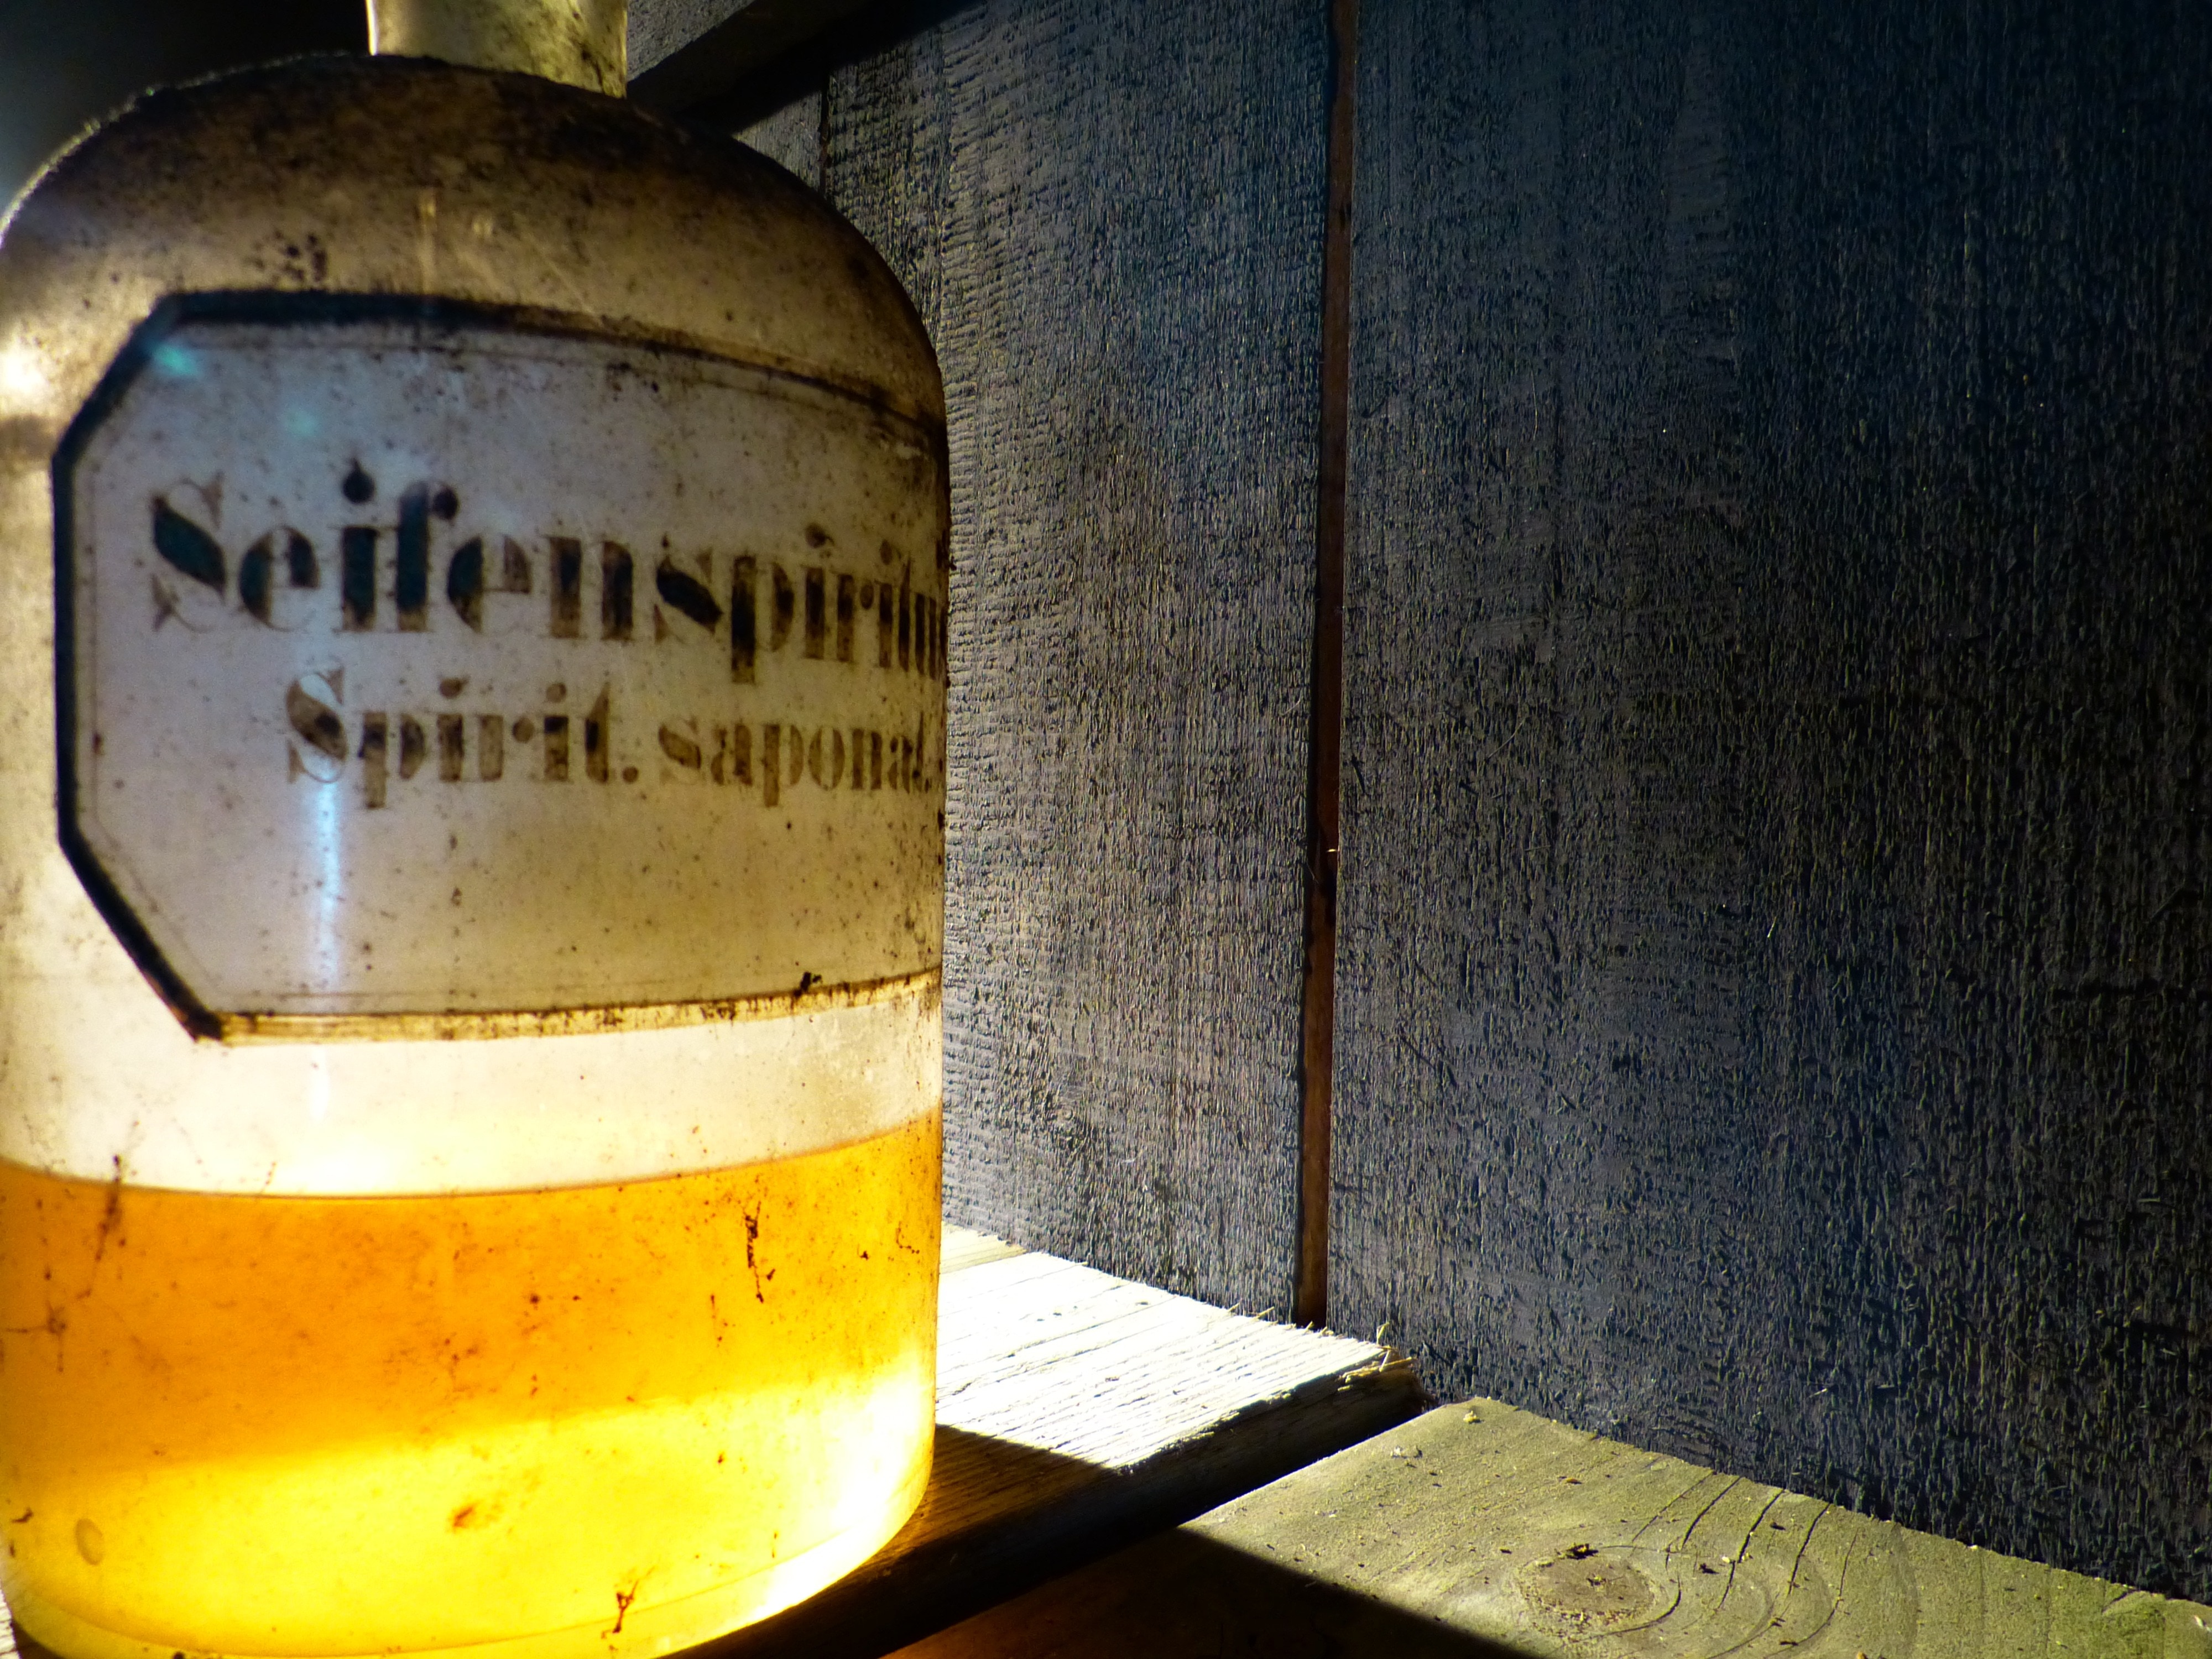 seifenspiring spirit saponal bottle